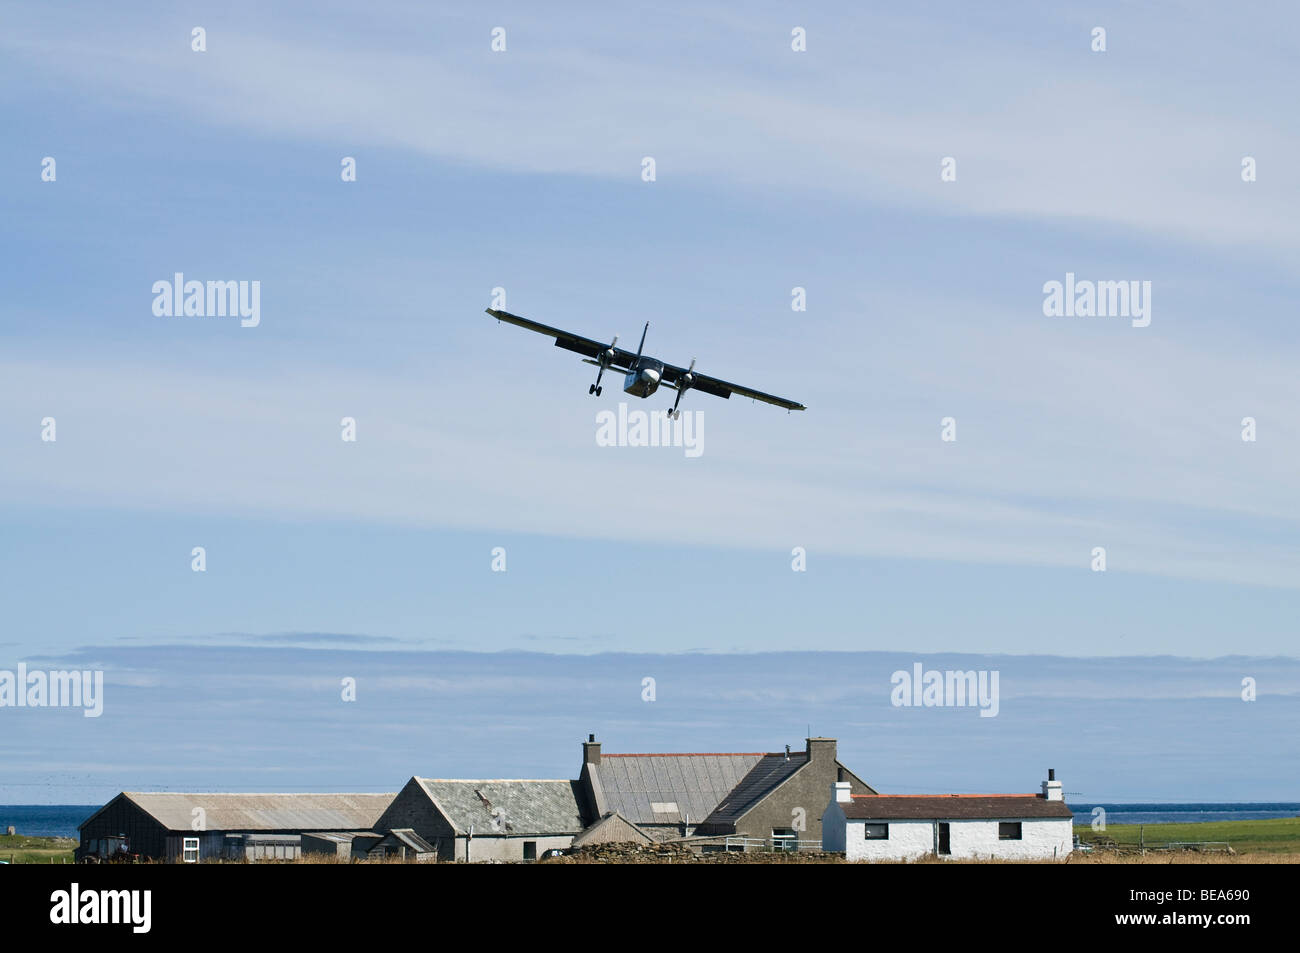 dh Britten Norman Islander NORD RONALDSAY ORKNEY ISLES avion Loganair au-dessus du cottage petit avion atterrissage île maison éloignée Banque D'Images